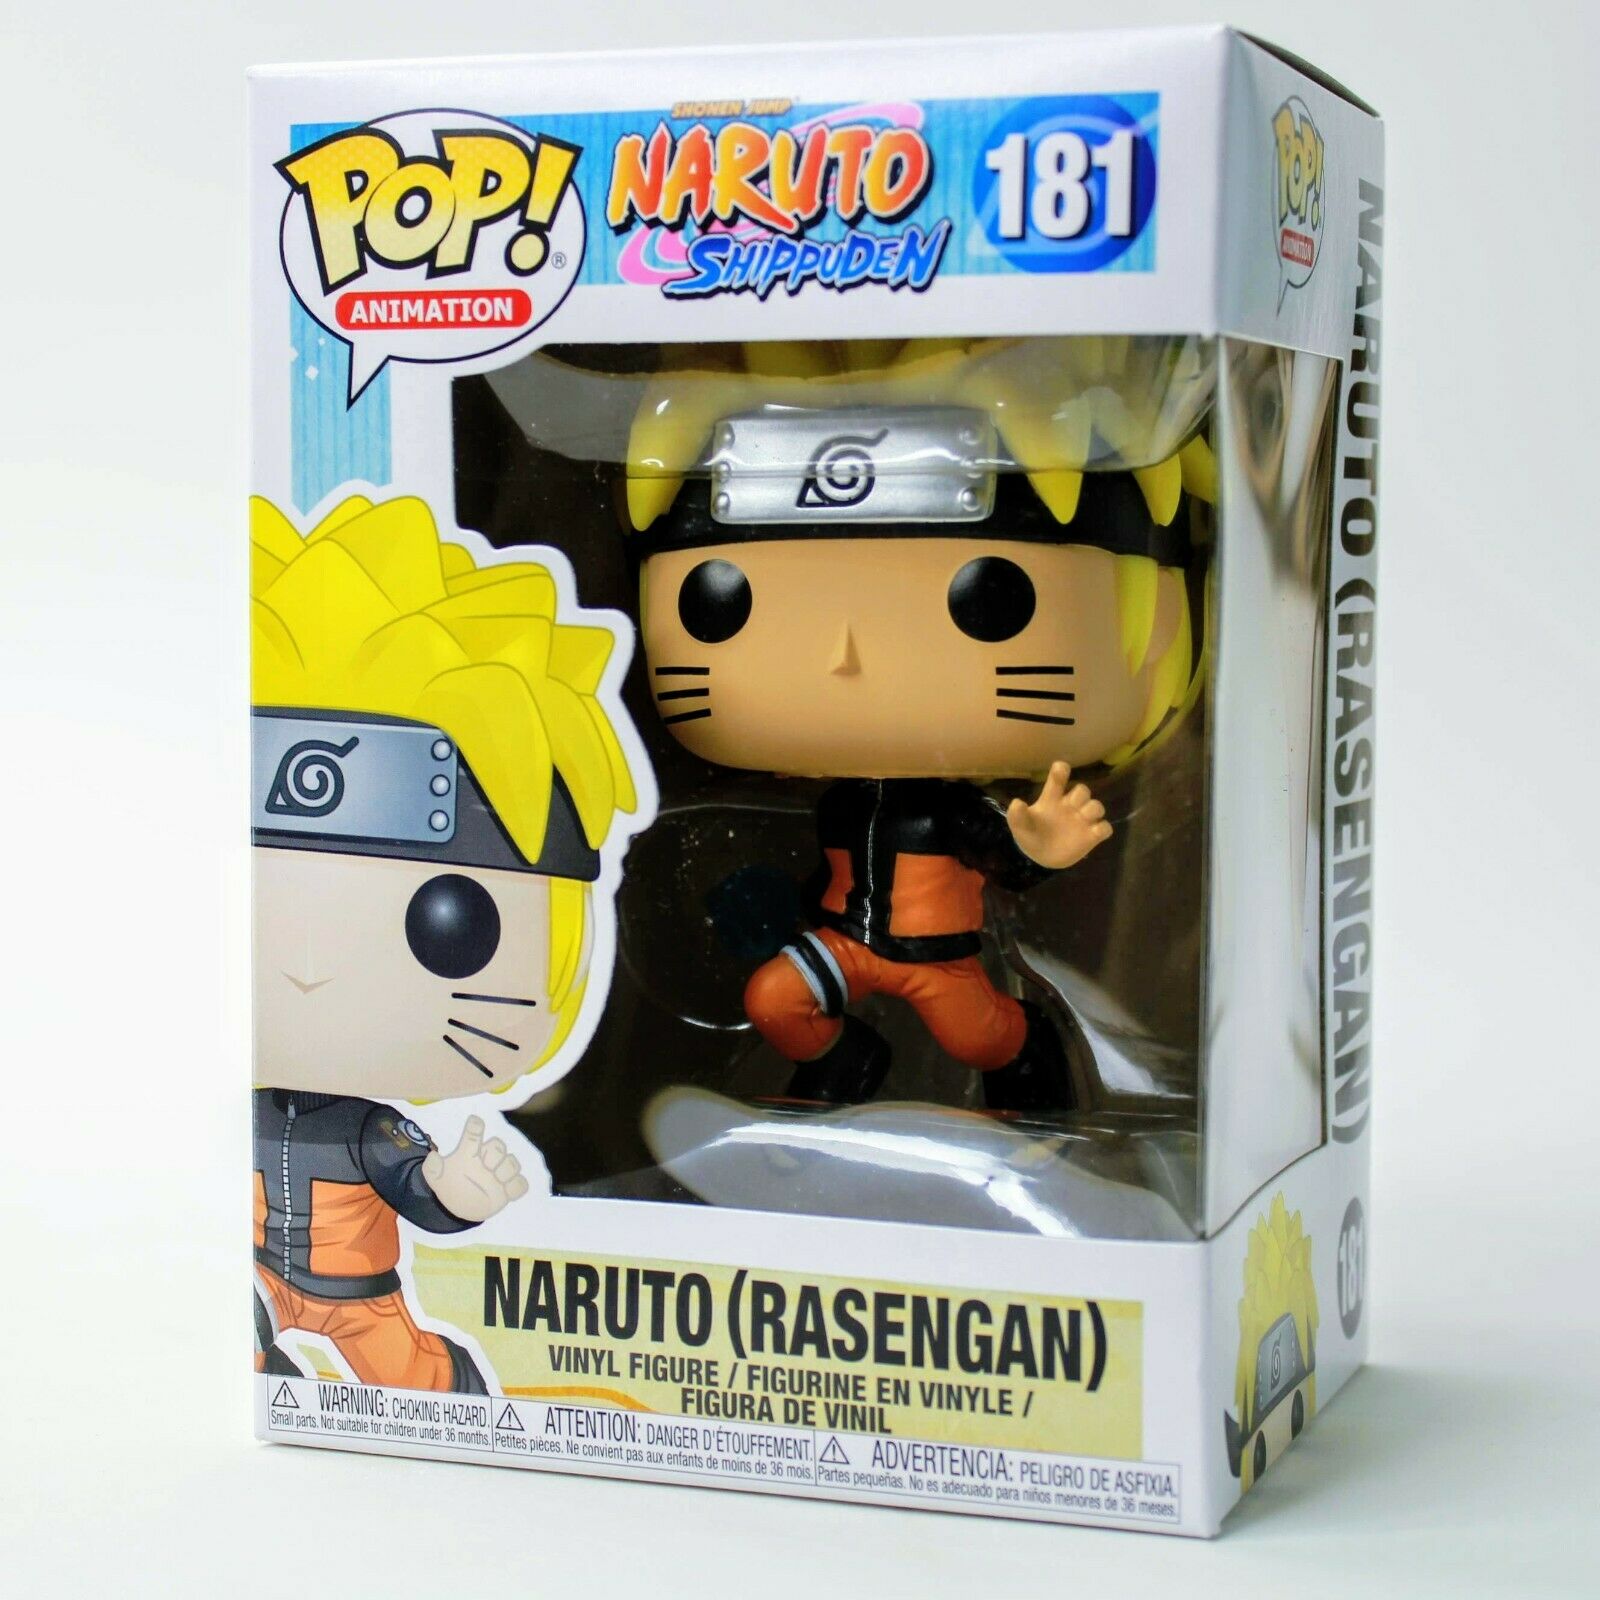 Naruto Shippuden Naruto Rasengan Funko Pop! #181